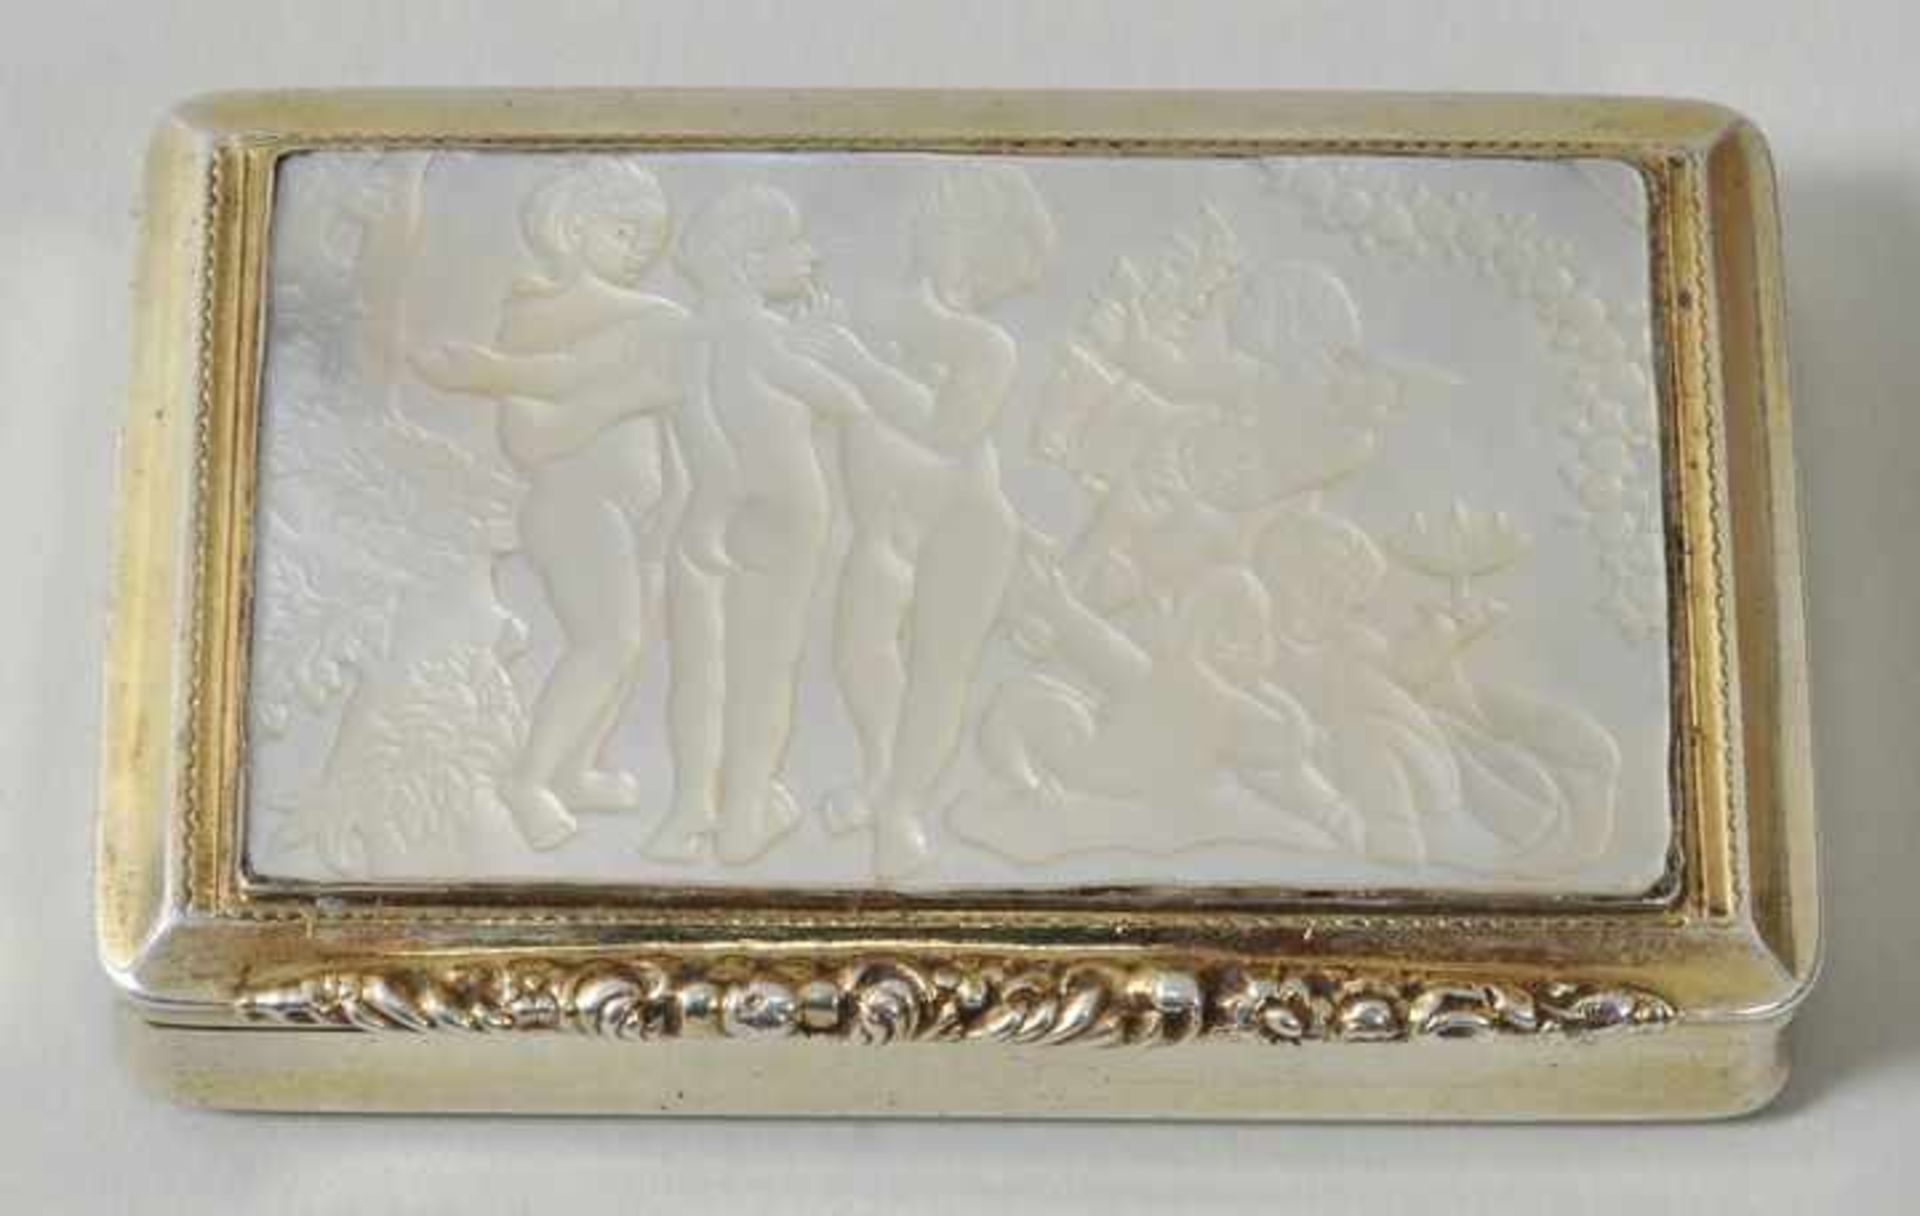 Perlmutt-Tabatiere, Wien, um 1830 Silber, vergoldet. Rechteckige Form mit Scharnierdeckel, im Deckel